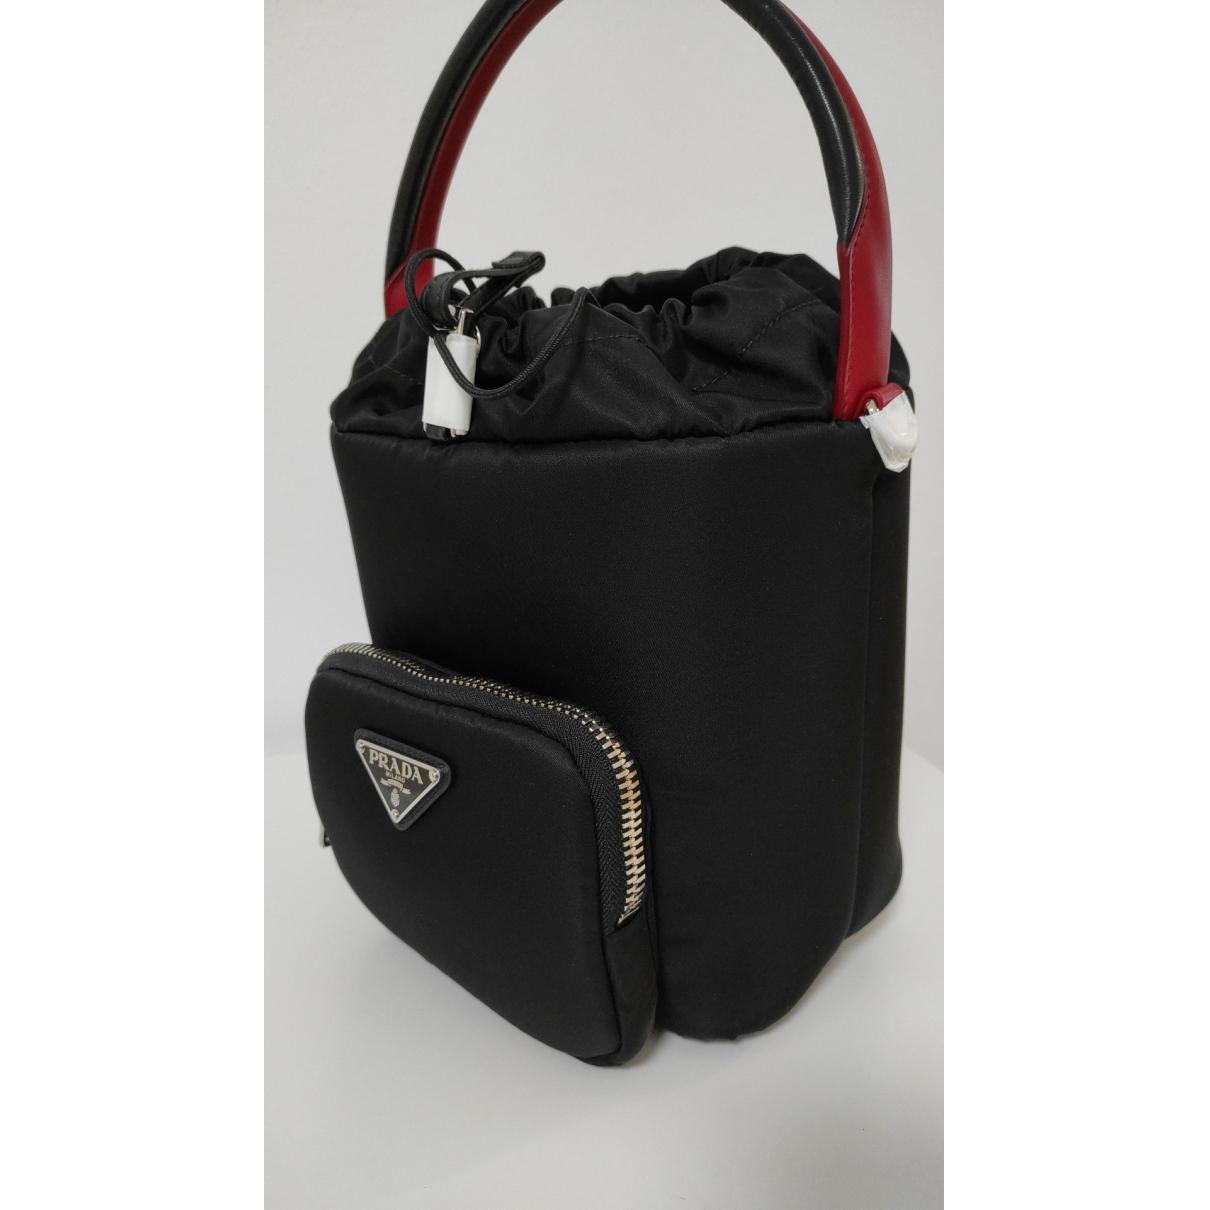 Cargo cloth handbag Prada